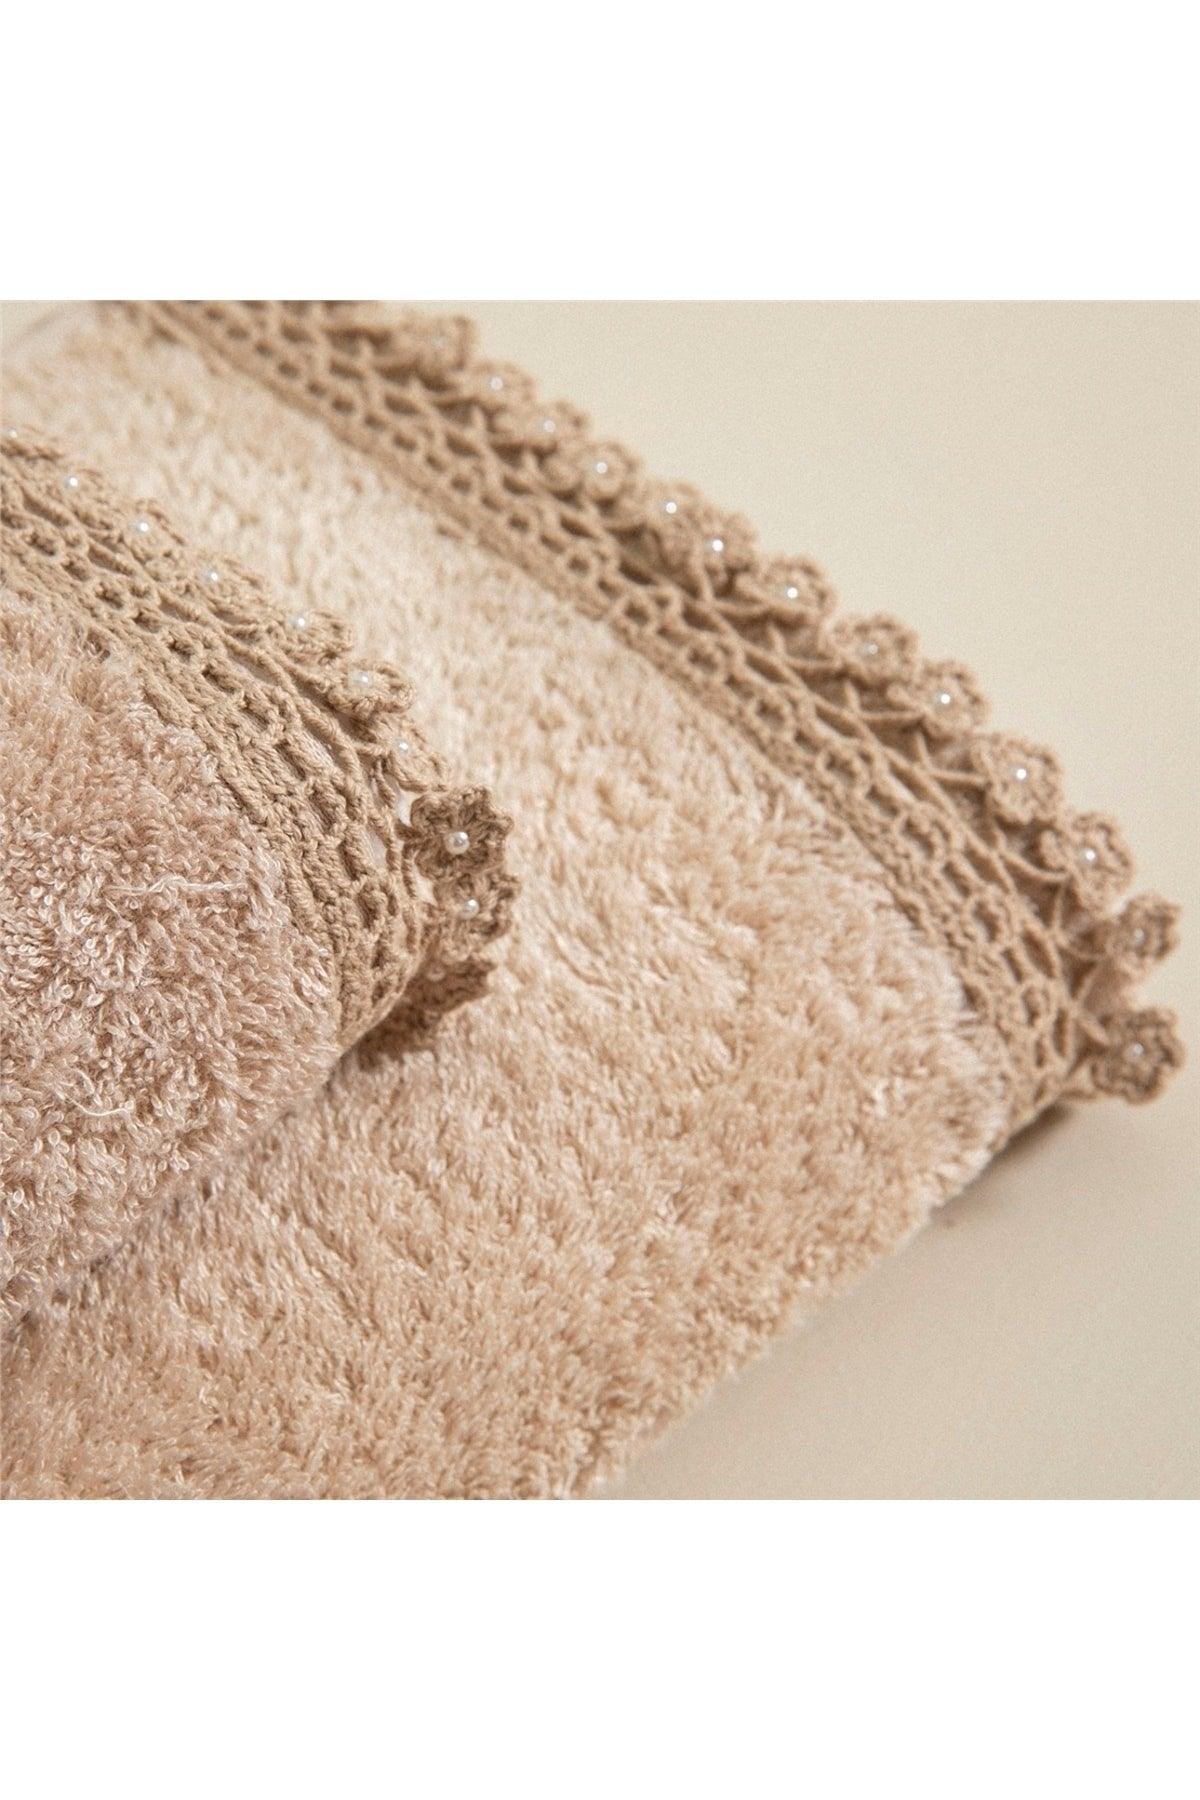 Madre Hand Towel 30x50 Cm Beige - Swordslife